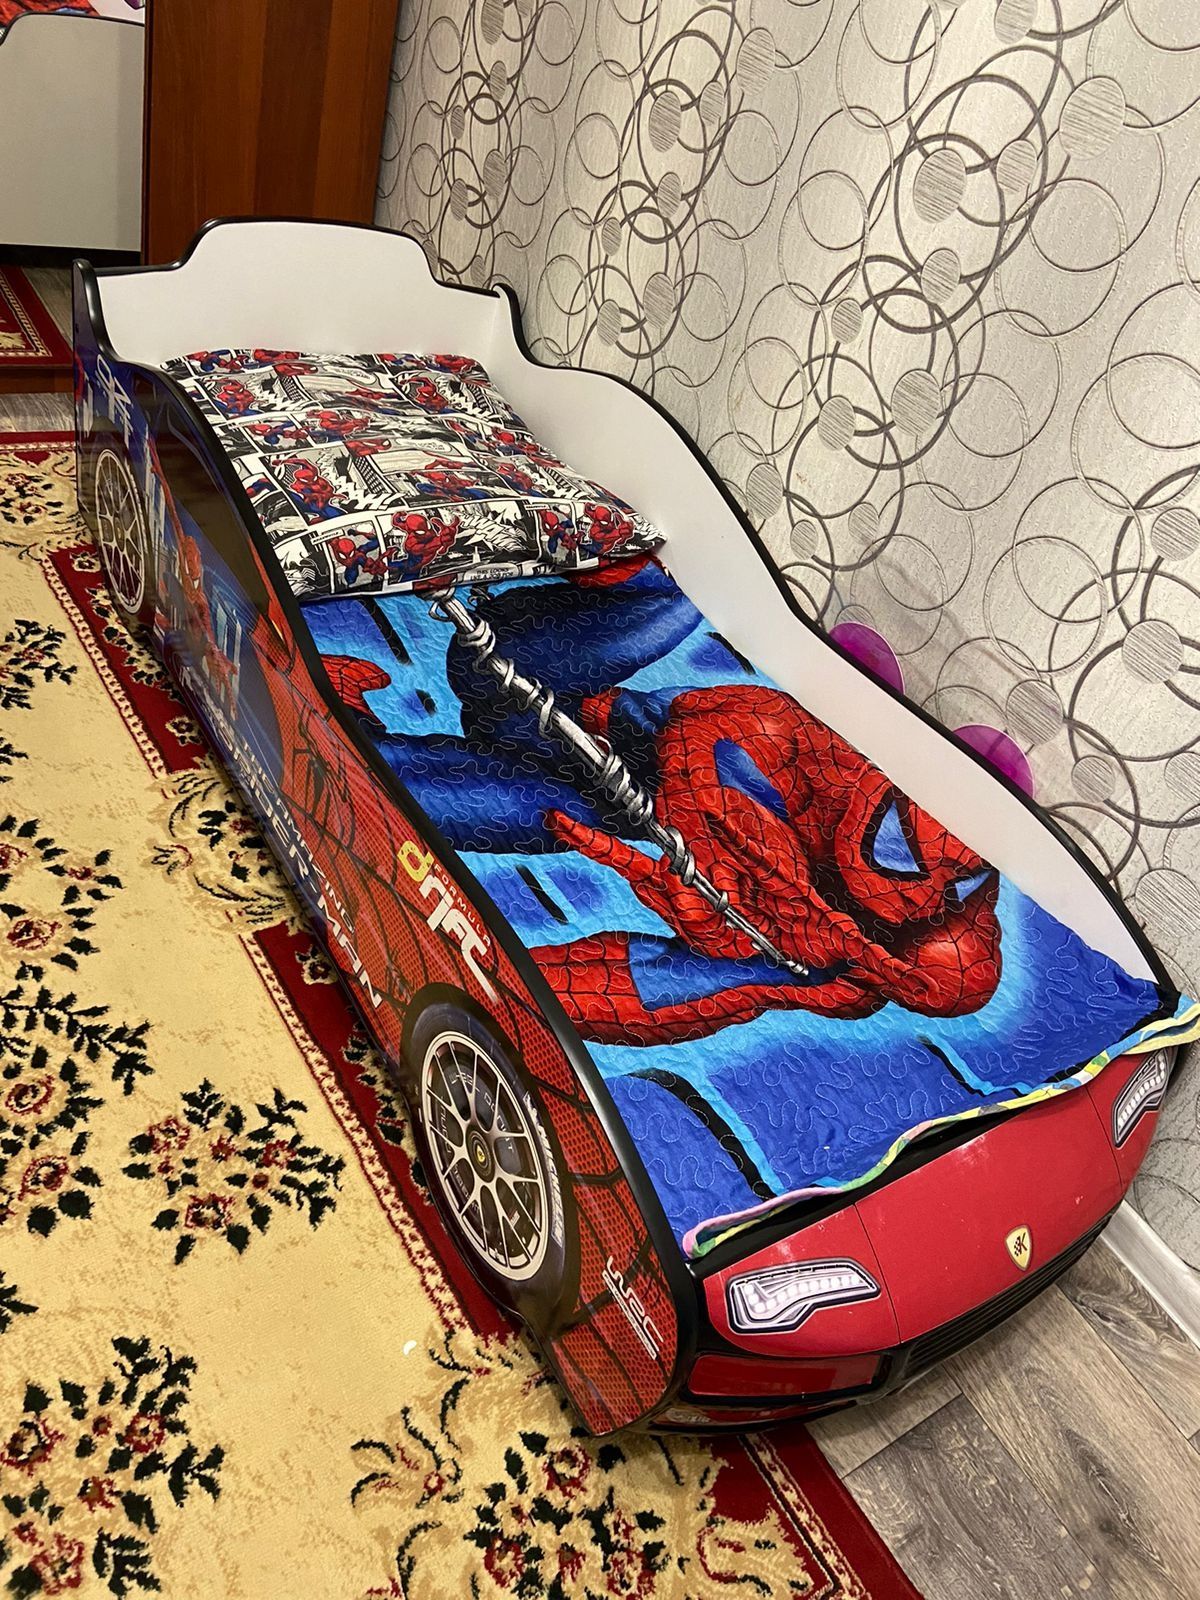 Продам кровать машинку в идеальном состоянии,